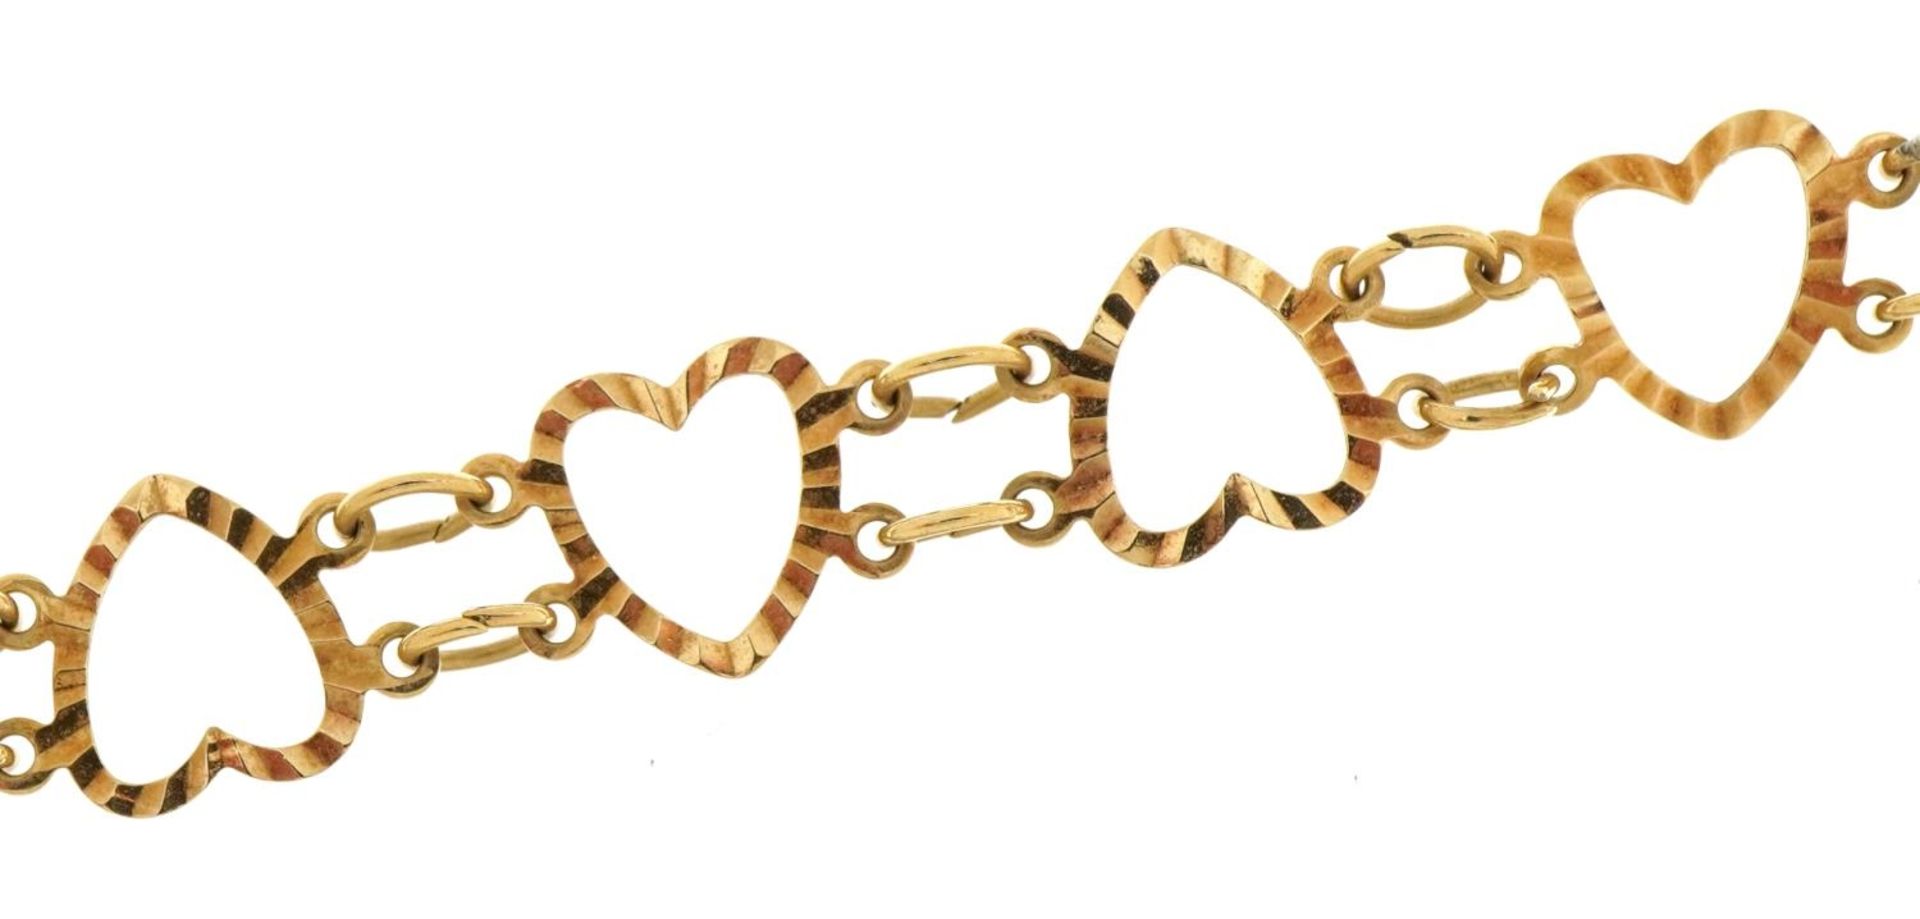 9ct gold love heart bracelet, 20cm in length, 3.3g